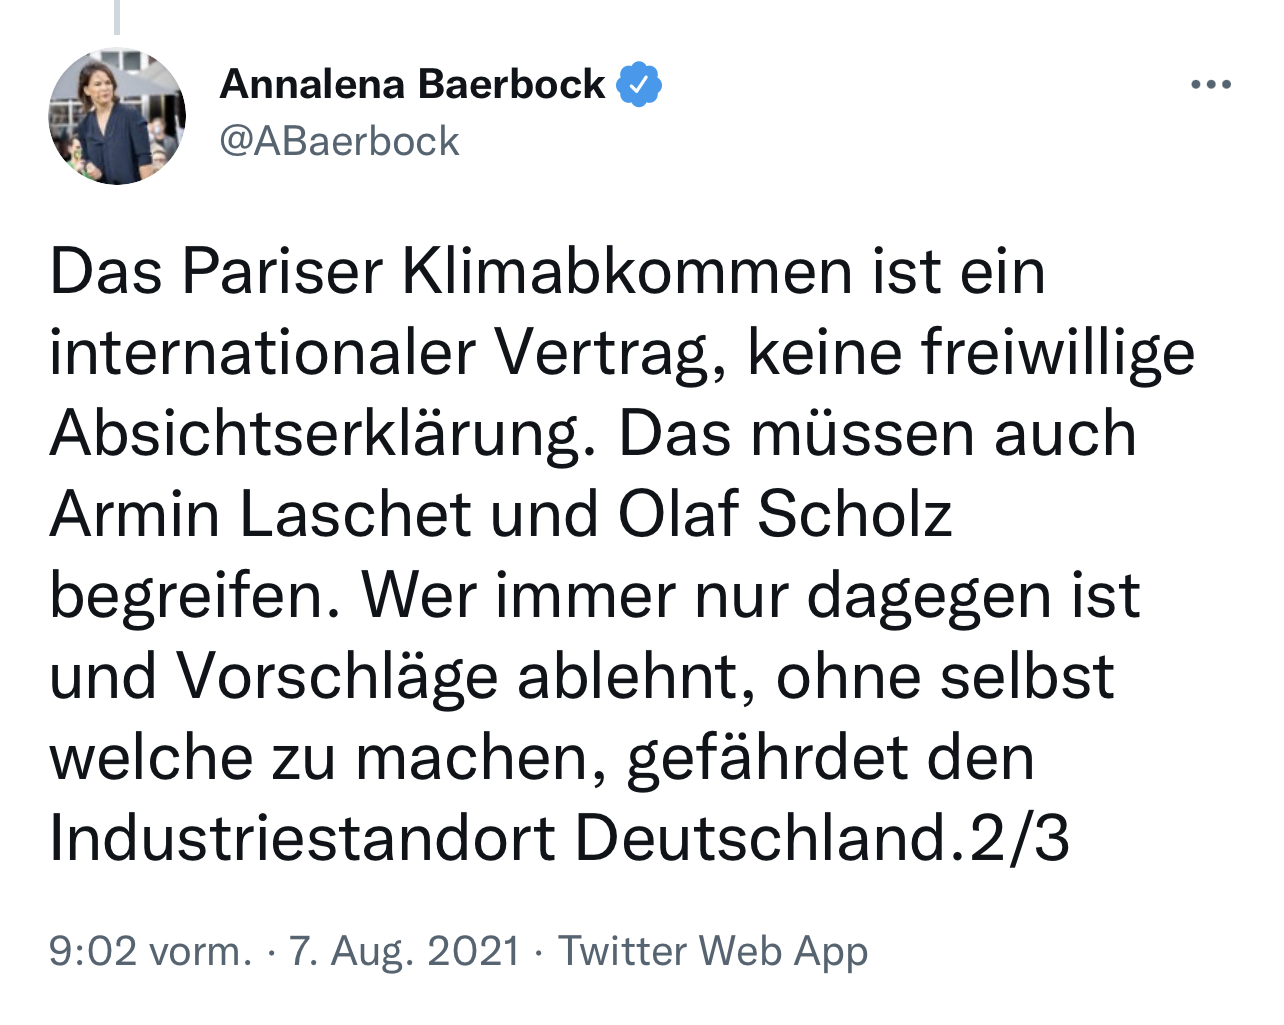 Tweet von Annalena Bearbock von 07. August 2021: Das Pariser Klimabkommen ist ein internationaler Vertrag, keine freiwillige Absichtserklärung. Das müssen auch Armin Laschet und Olaf Scholz begreifen. Wer immer nur dagegen ist und Vorschläge ablehnt, ohne selbst welche zu machen, gefährdet den Industriestandort Deutschland. 